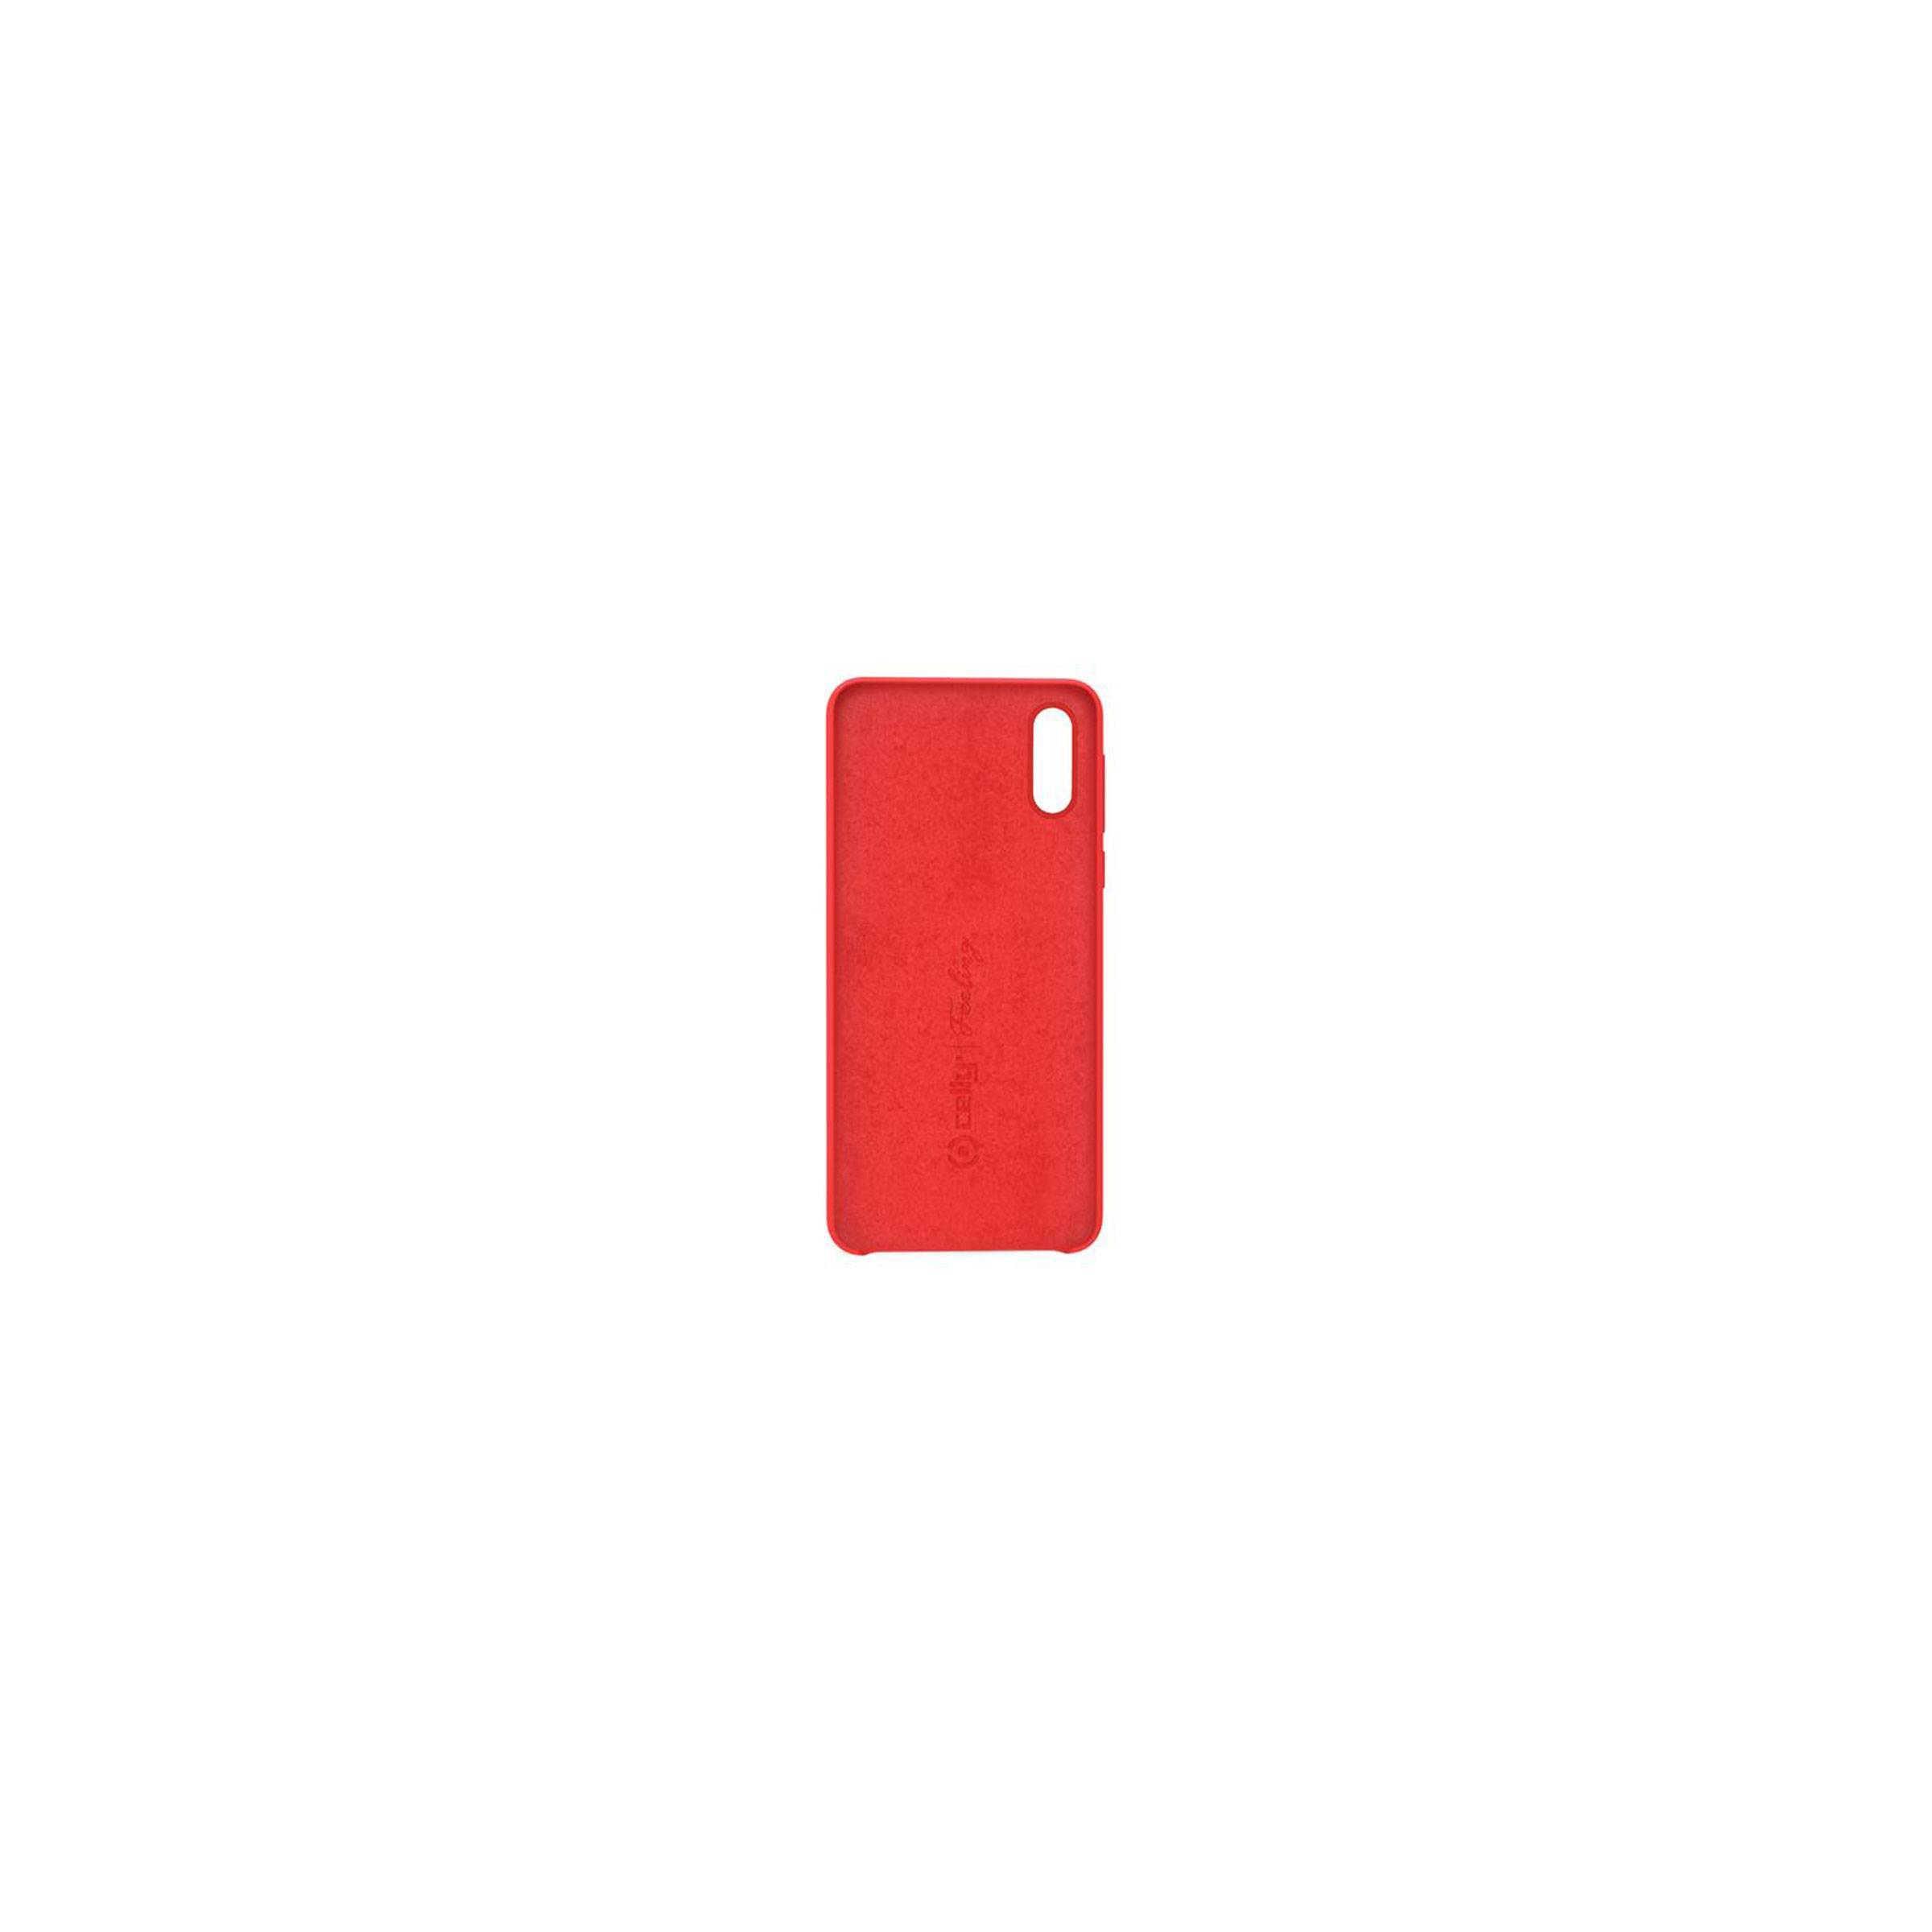 Bilde av Celly Feeling Huawei P30 Silikone Cover, Rød